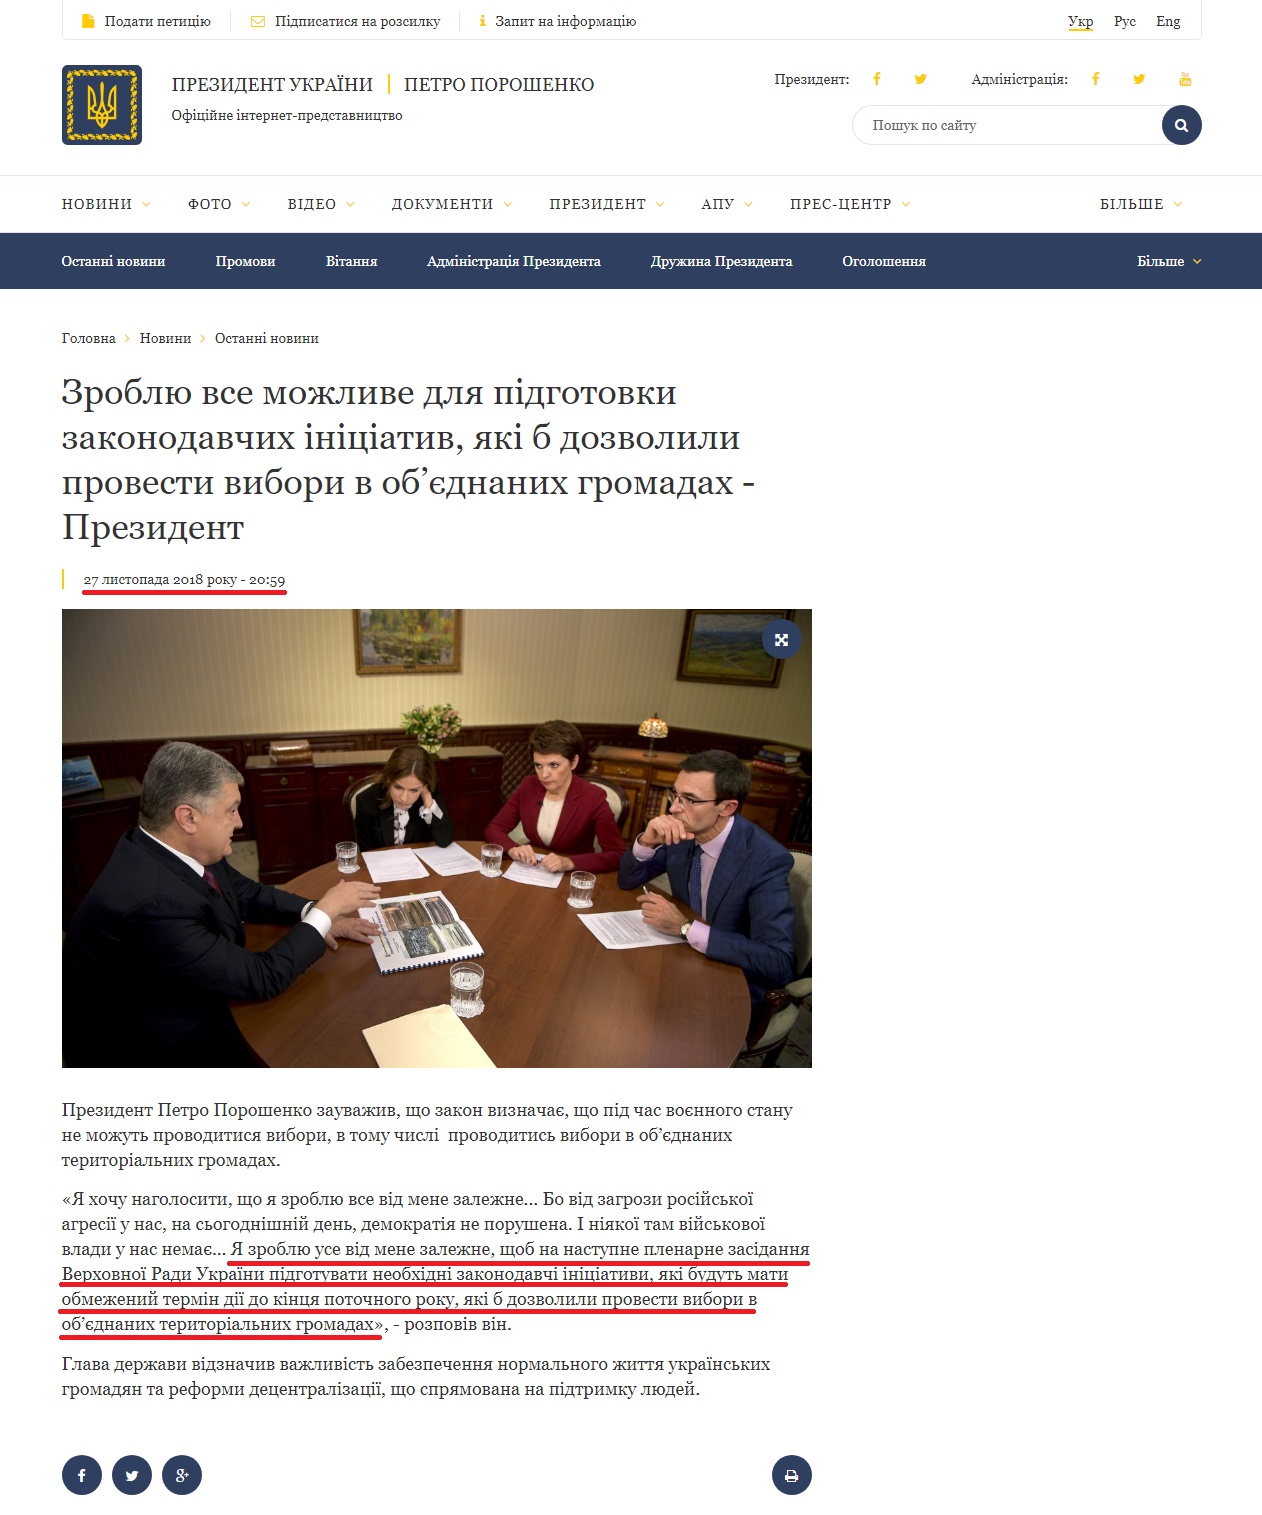 https://www.president.gov.ua/news/zroblyu-vse-mozhlive-dlya-pidgotovki-zakonodavchih-iniciativ-51426